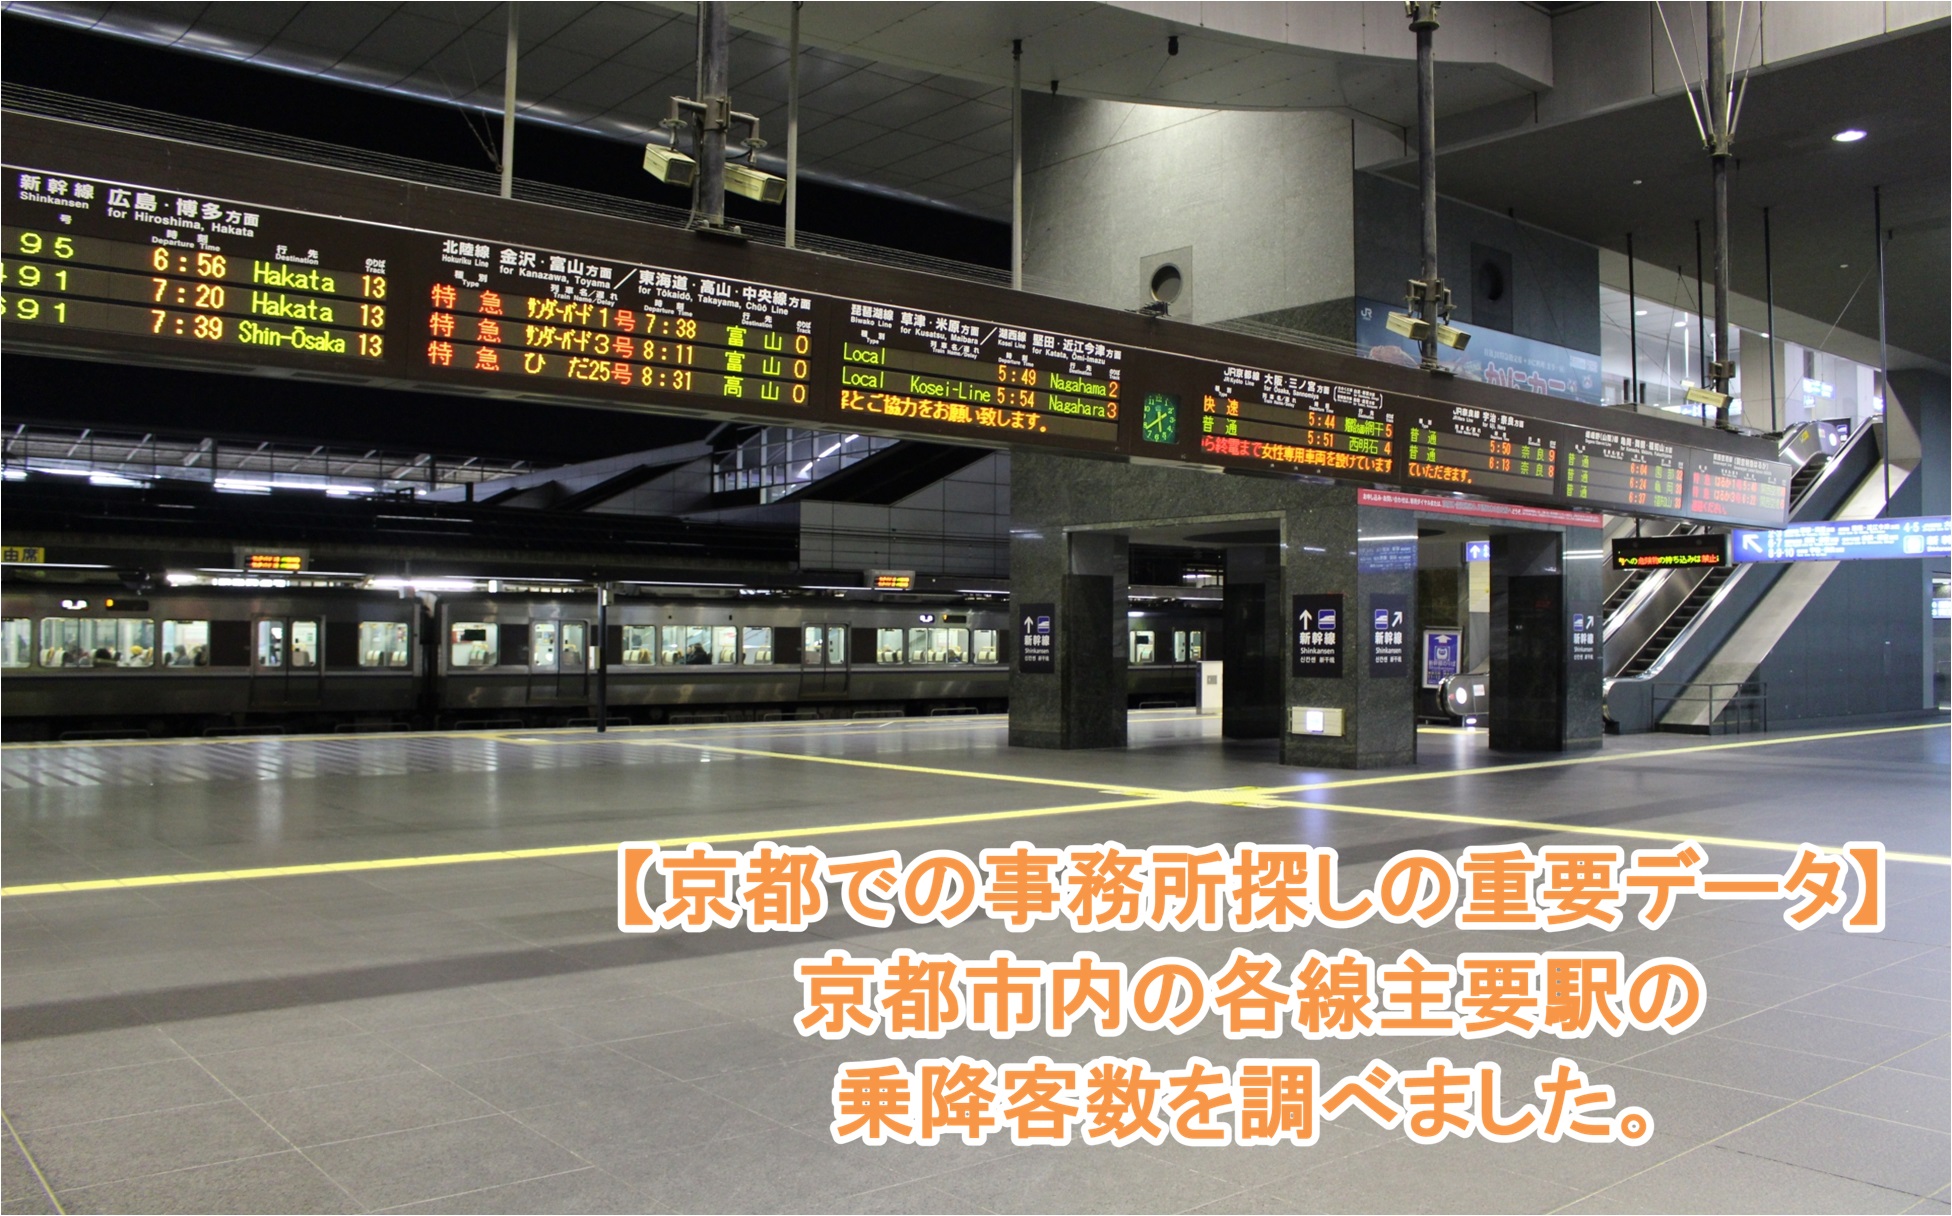 京都の主要駅の乗降客数を調査し、データ化しました。